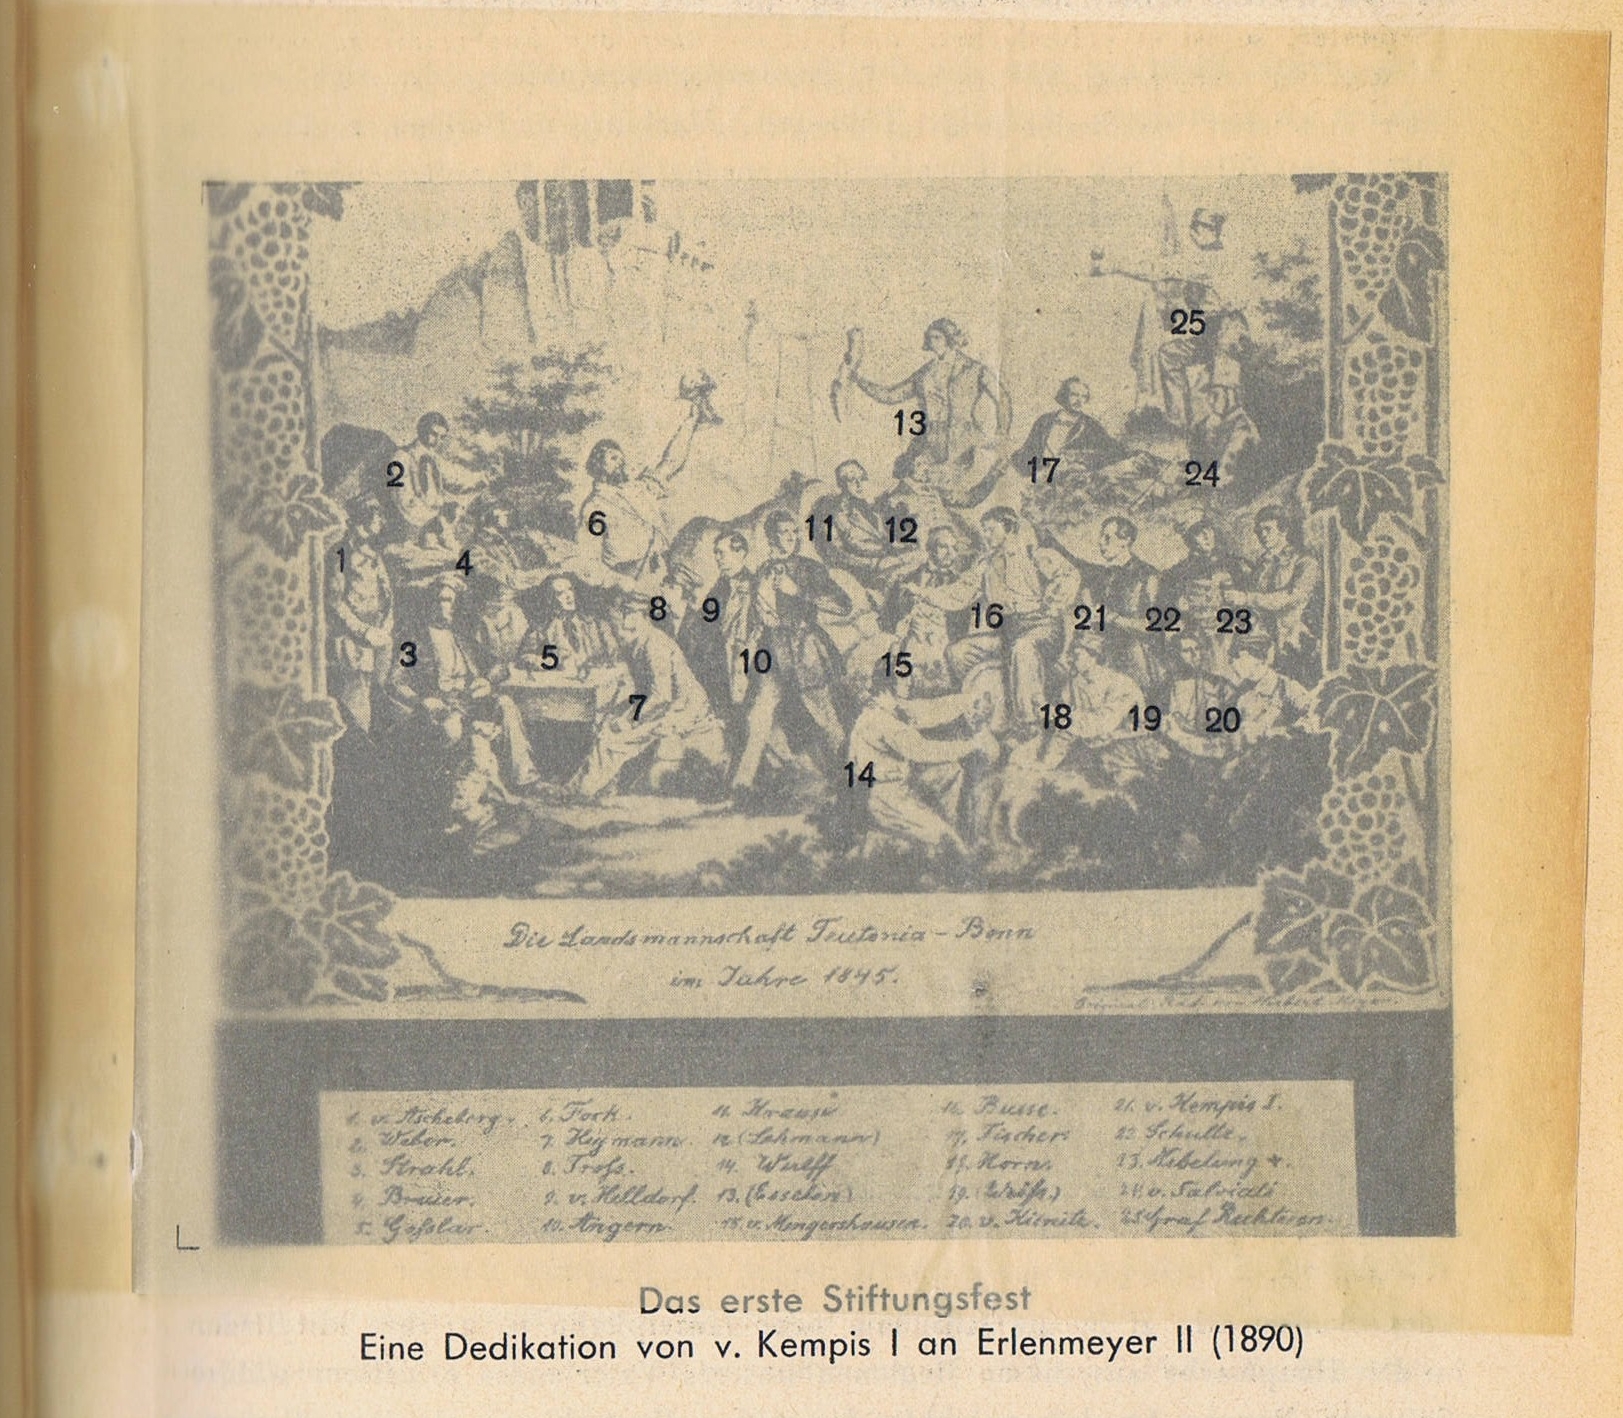 Dedikation von Max von Kempis I an Erlenmeyer II